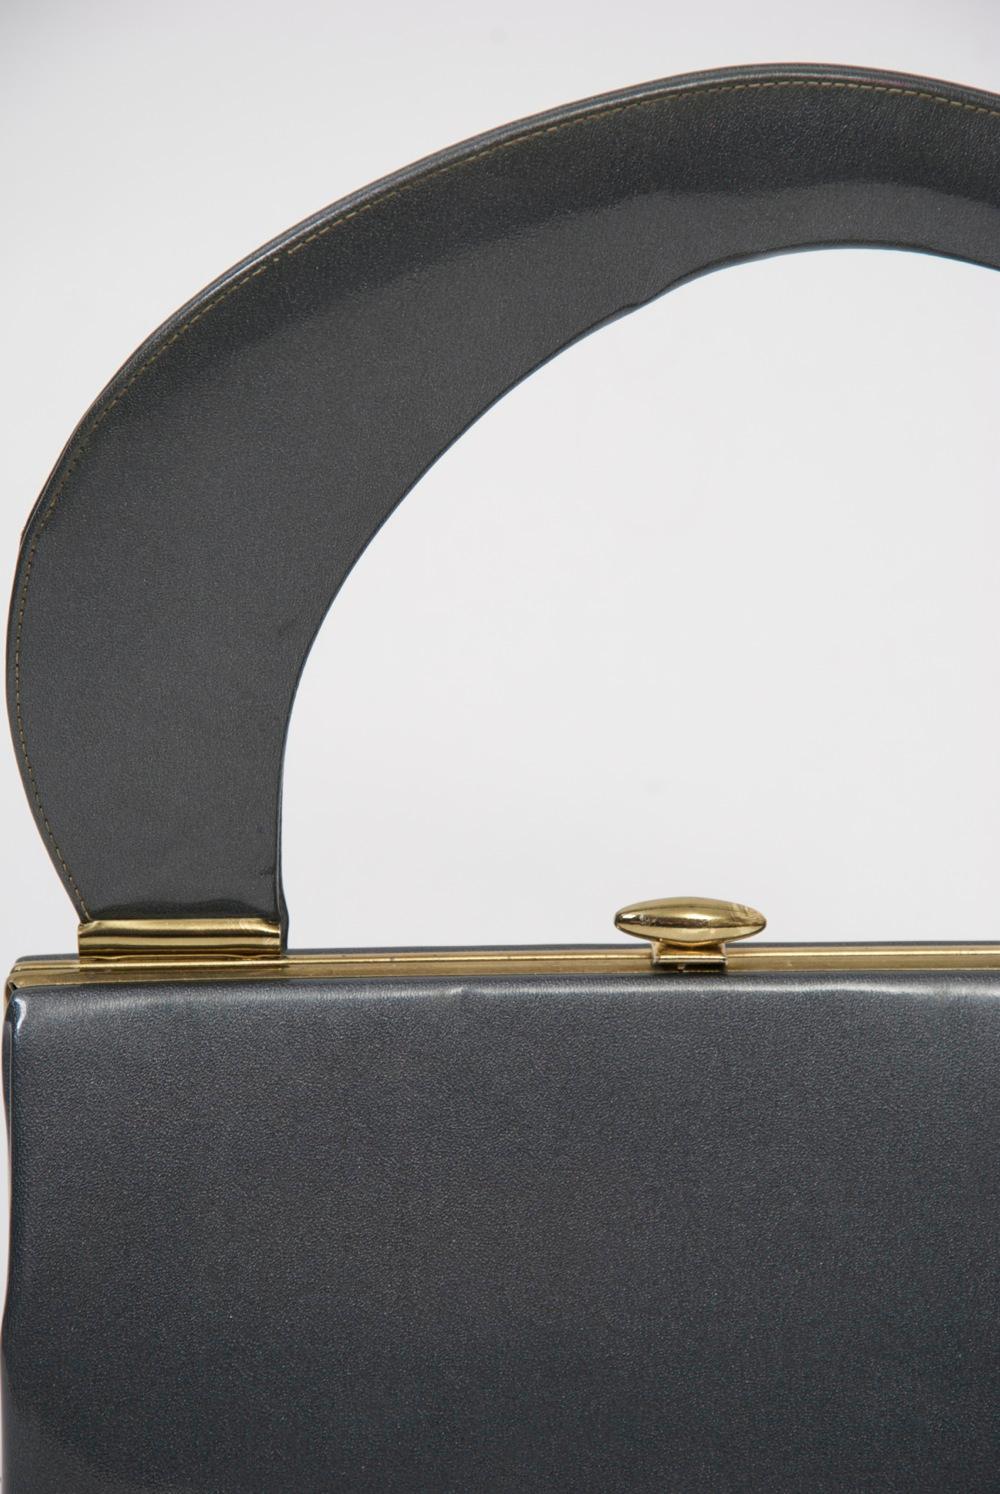 Grand sac à main des années 1960, doté d'une poignée inhabituelle qui lui confère une esthétique moderniste, et réalisé dans une couleur et un matériau des plus recherchés - le vernis gunmetal. Le cadre et la fermeture en laiton simples permettent